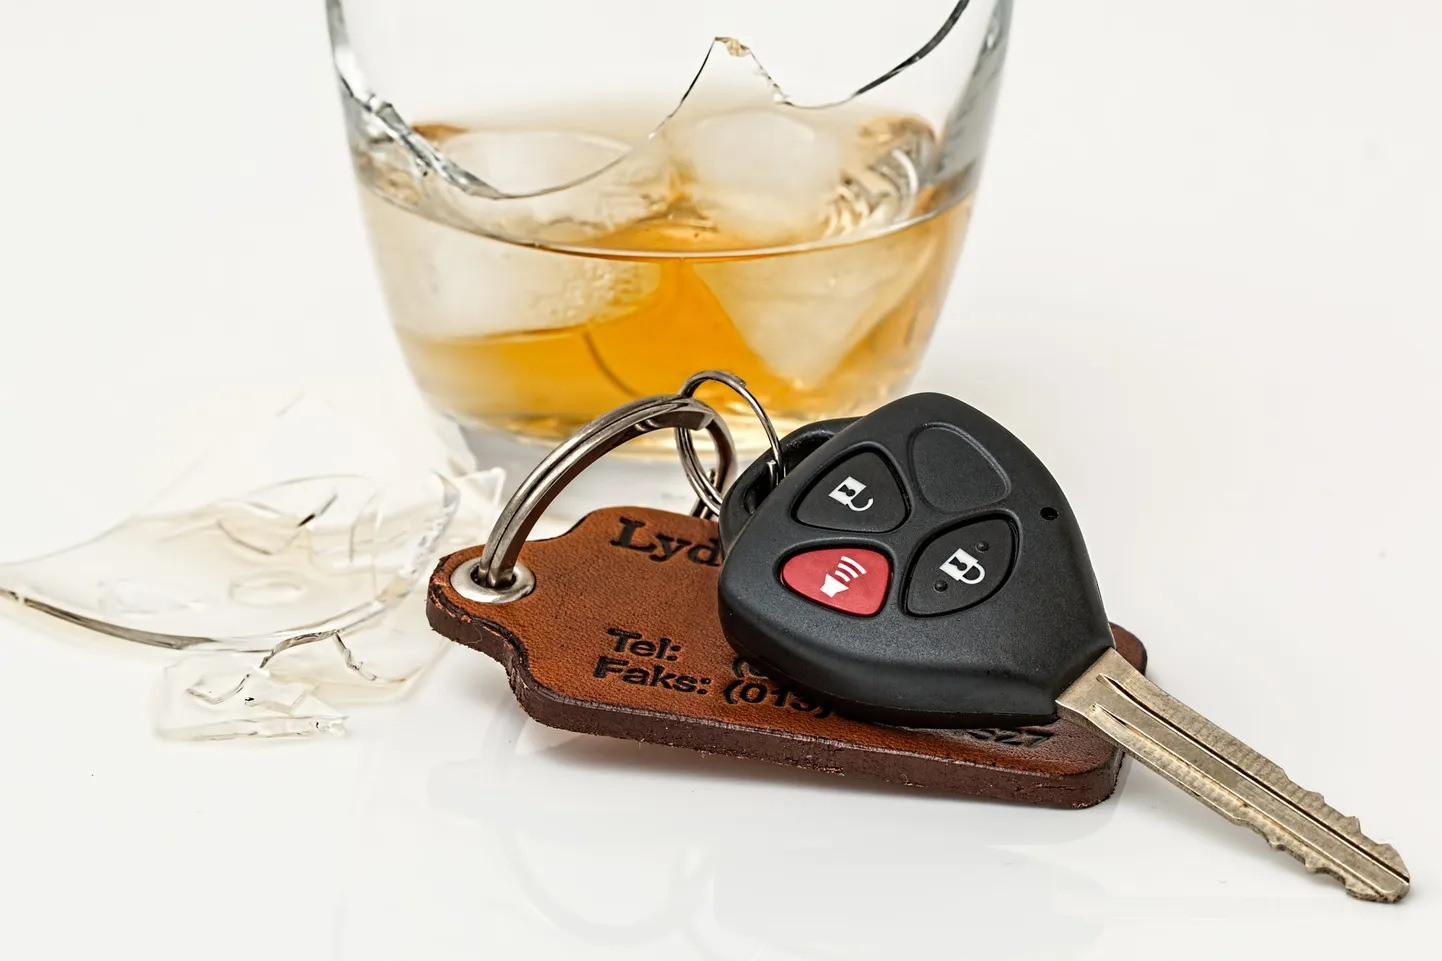 Ключи от автомобиля и алкоголь. Иллюстративное фото